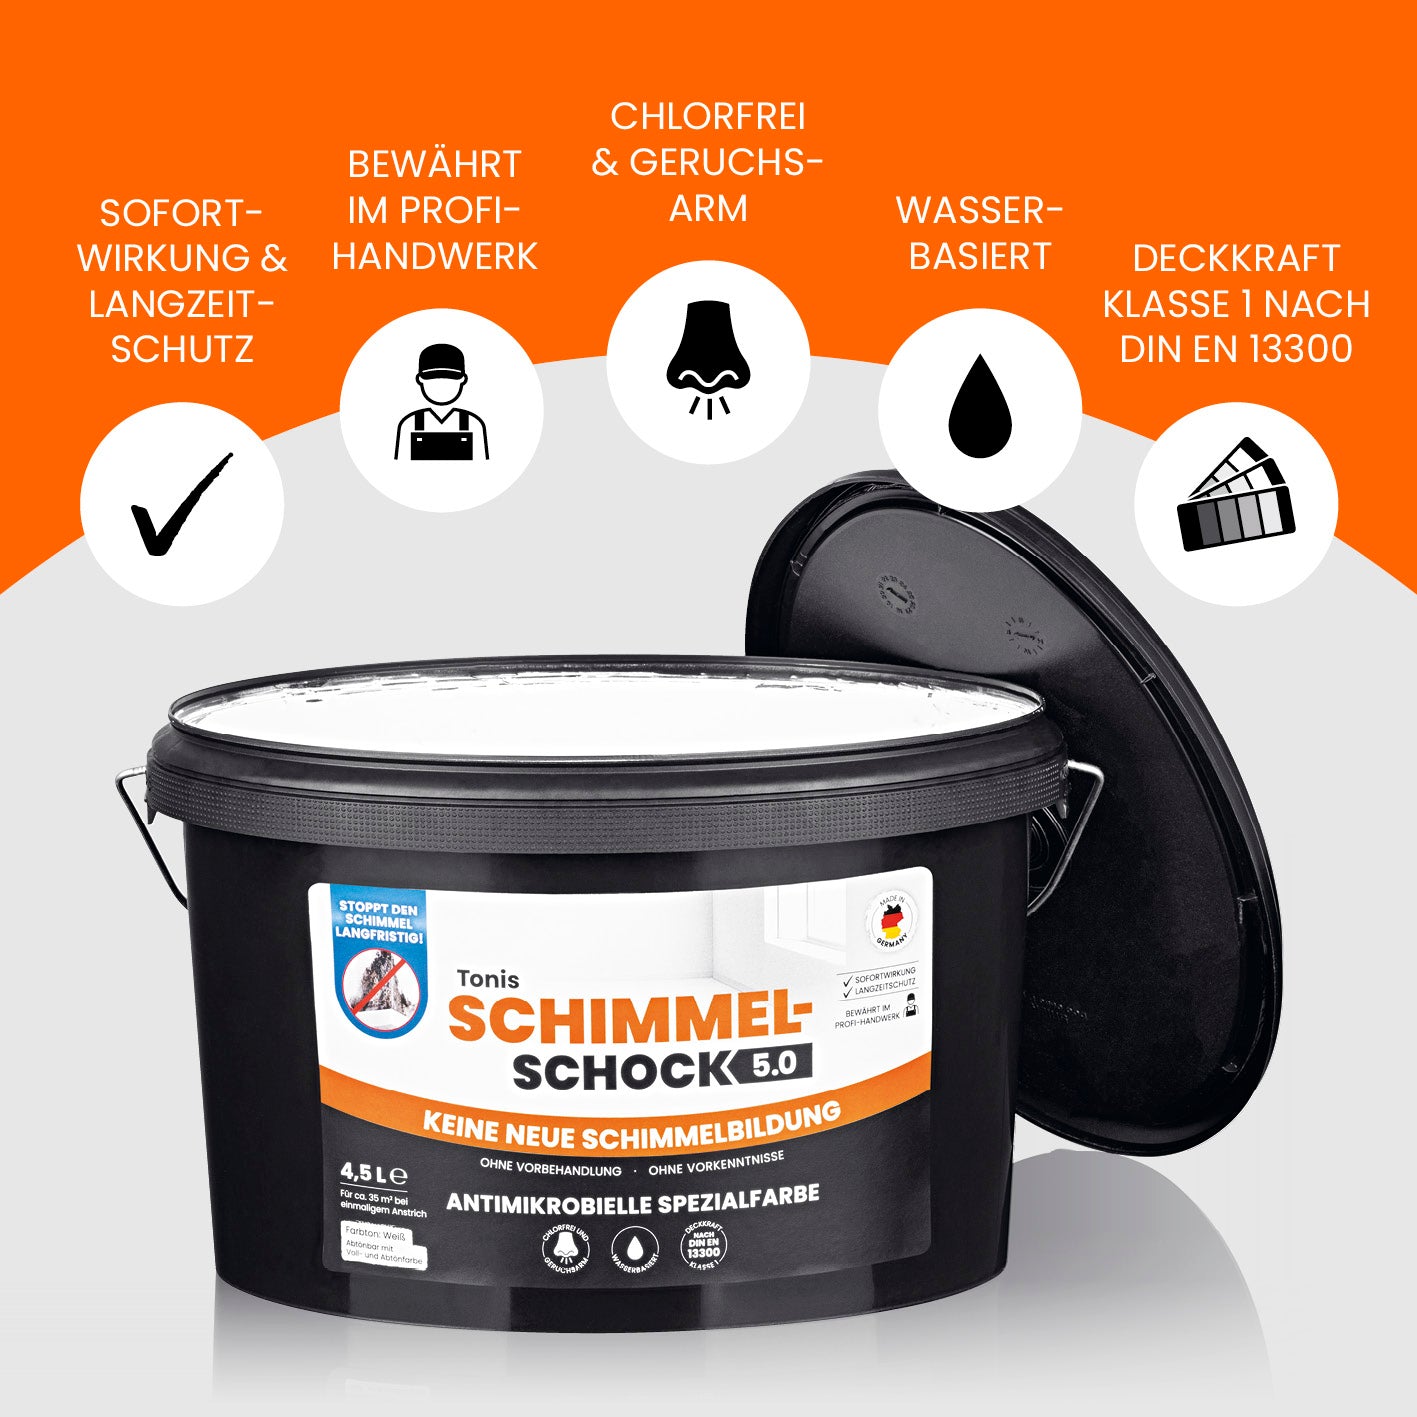 Tonis SCHIMMELSCHOCK 5.0 - Antimikrobielle Spezialfarbe - Farbeimer 4,5l Gebinde - weiß